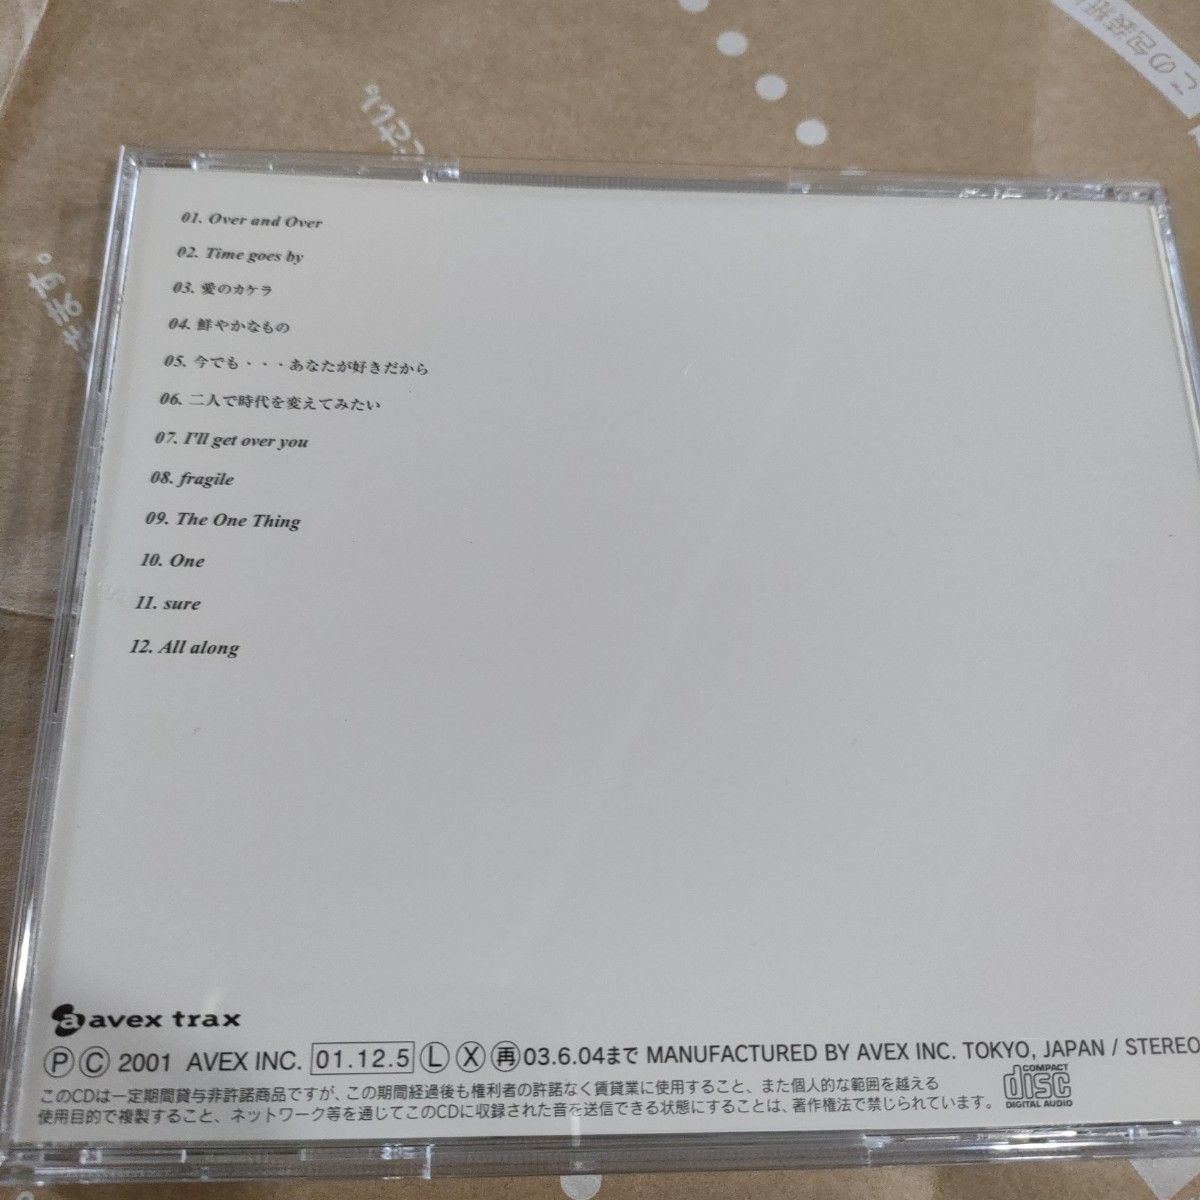 Ｅｖｅｒｙ Ｌｉｔｔｌｅ／ＥｖｅｒｙＢａｌｌａｄＳｏ CD